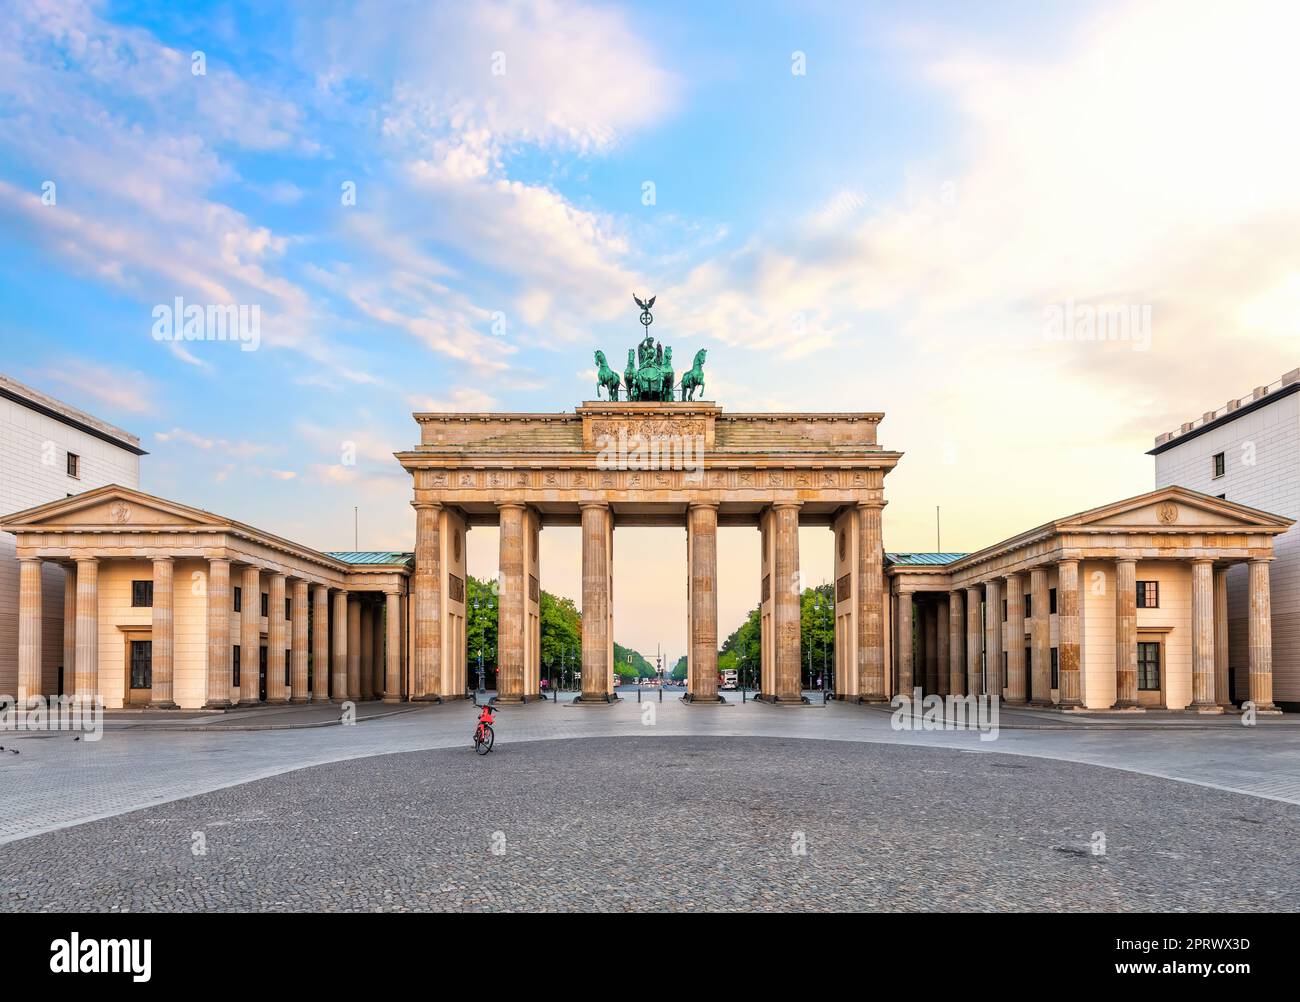 Belle porte de Brandebourg ou Brandenburger Tor au lever du soleil, Berlin, Allemagne. Banque D'Images